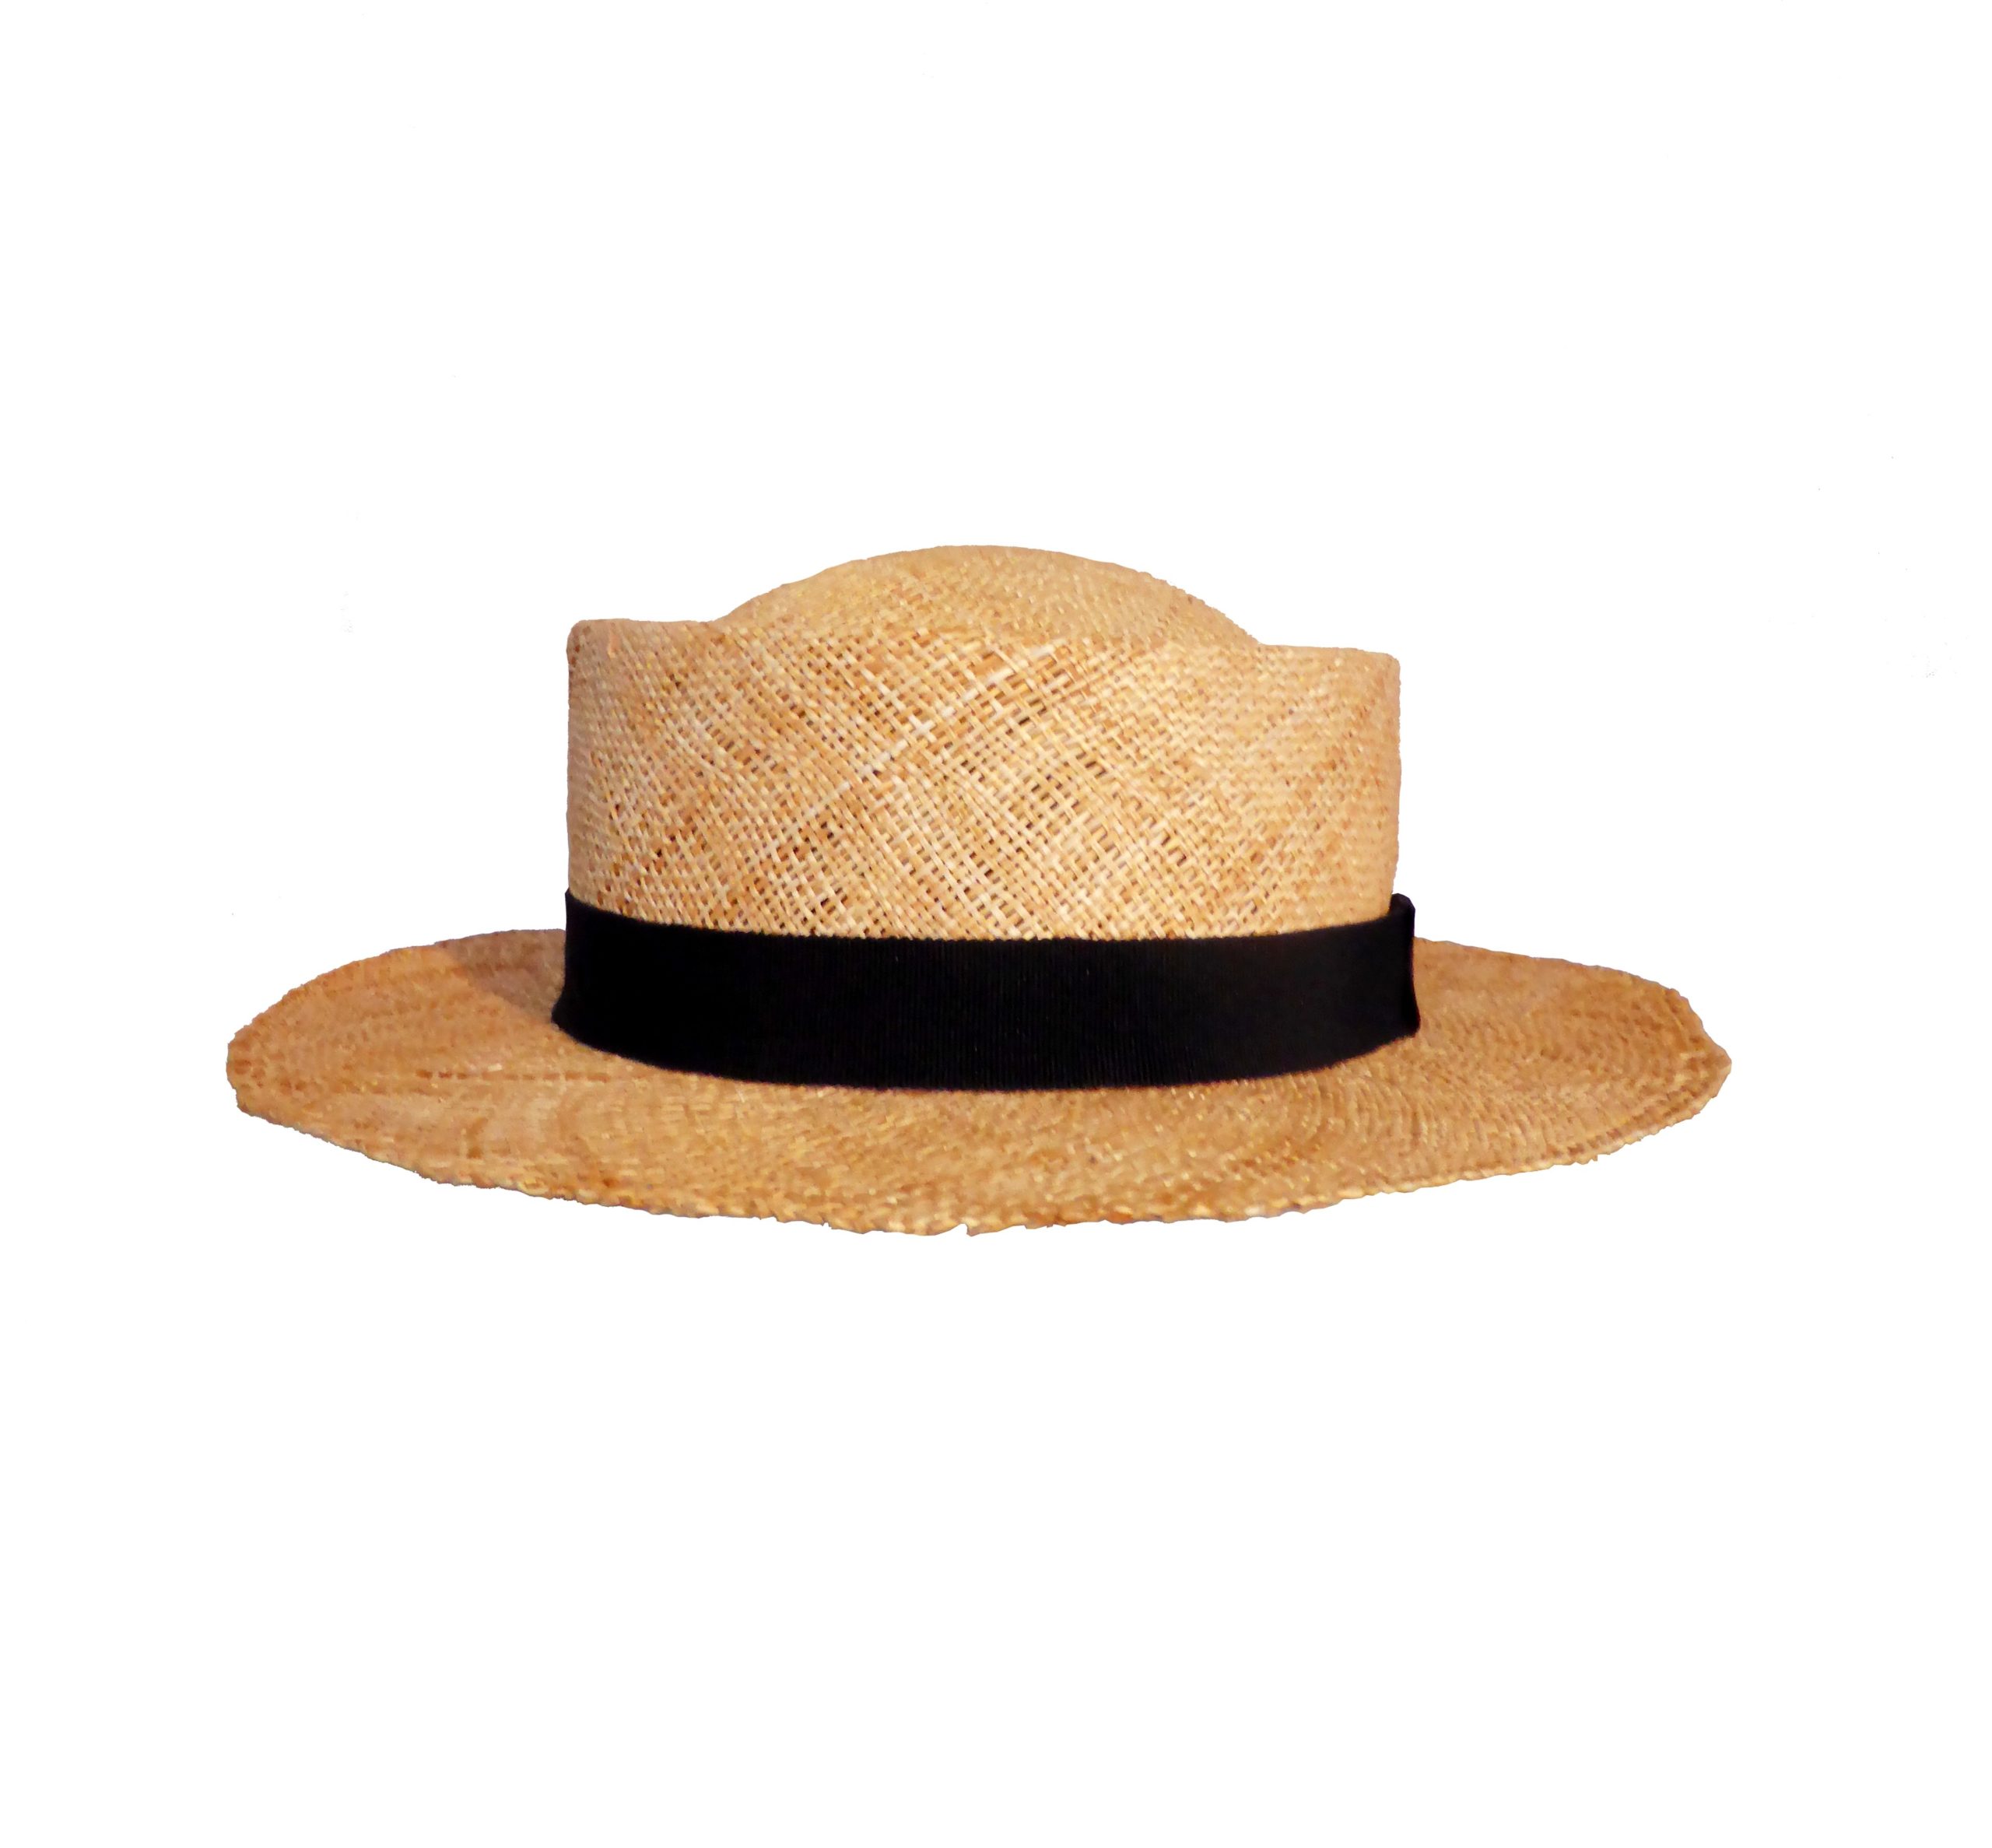 Bao straw hat